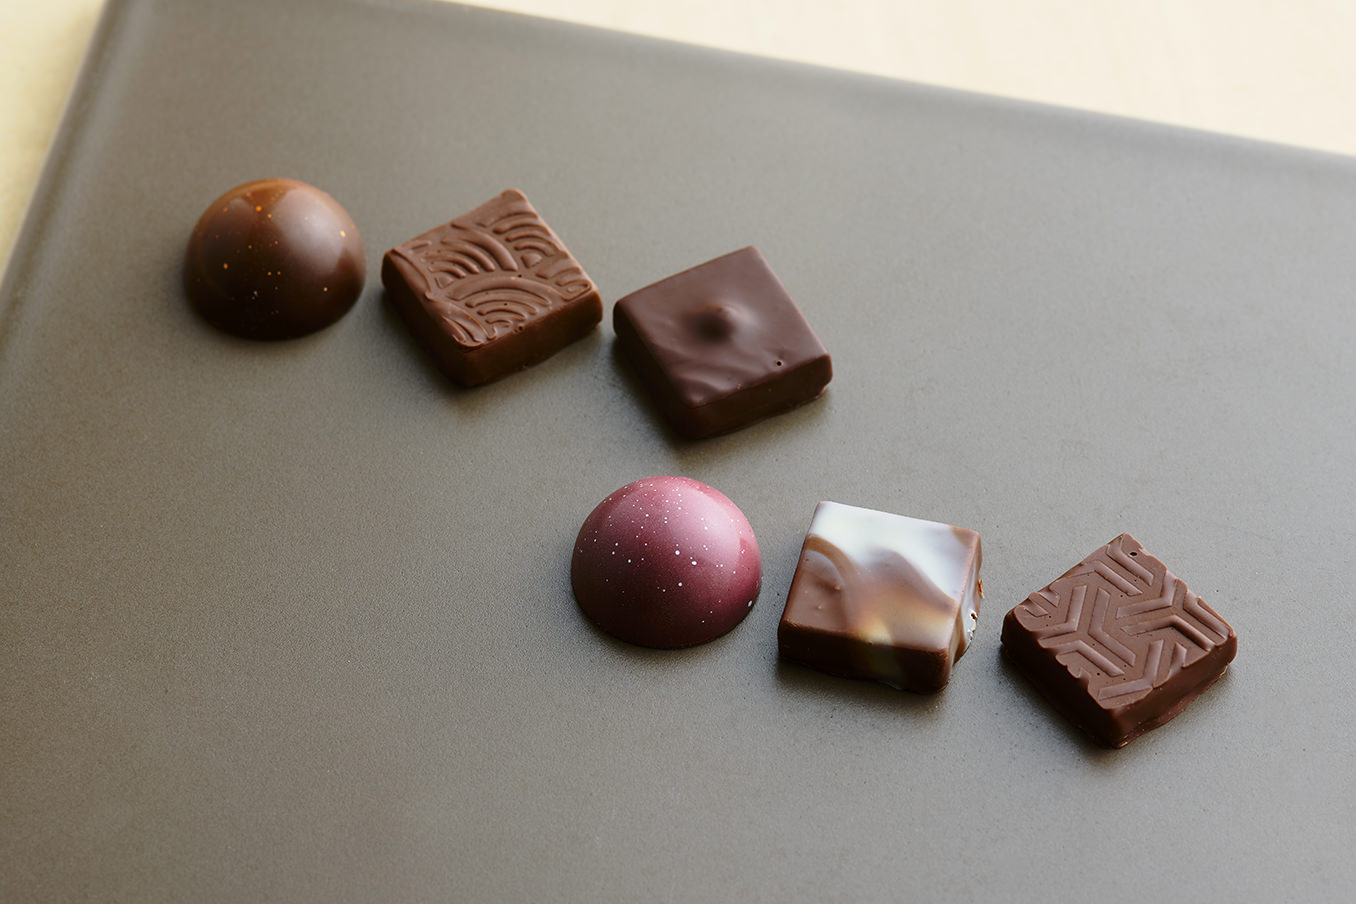 世界中で日本にしかないオンリーワンの味 Chocolate Station 東急百貨店ネットショッピング キャンペーン 東急百貨店ネットショッピング